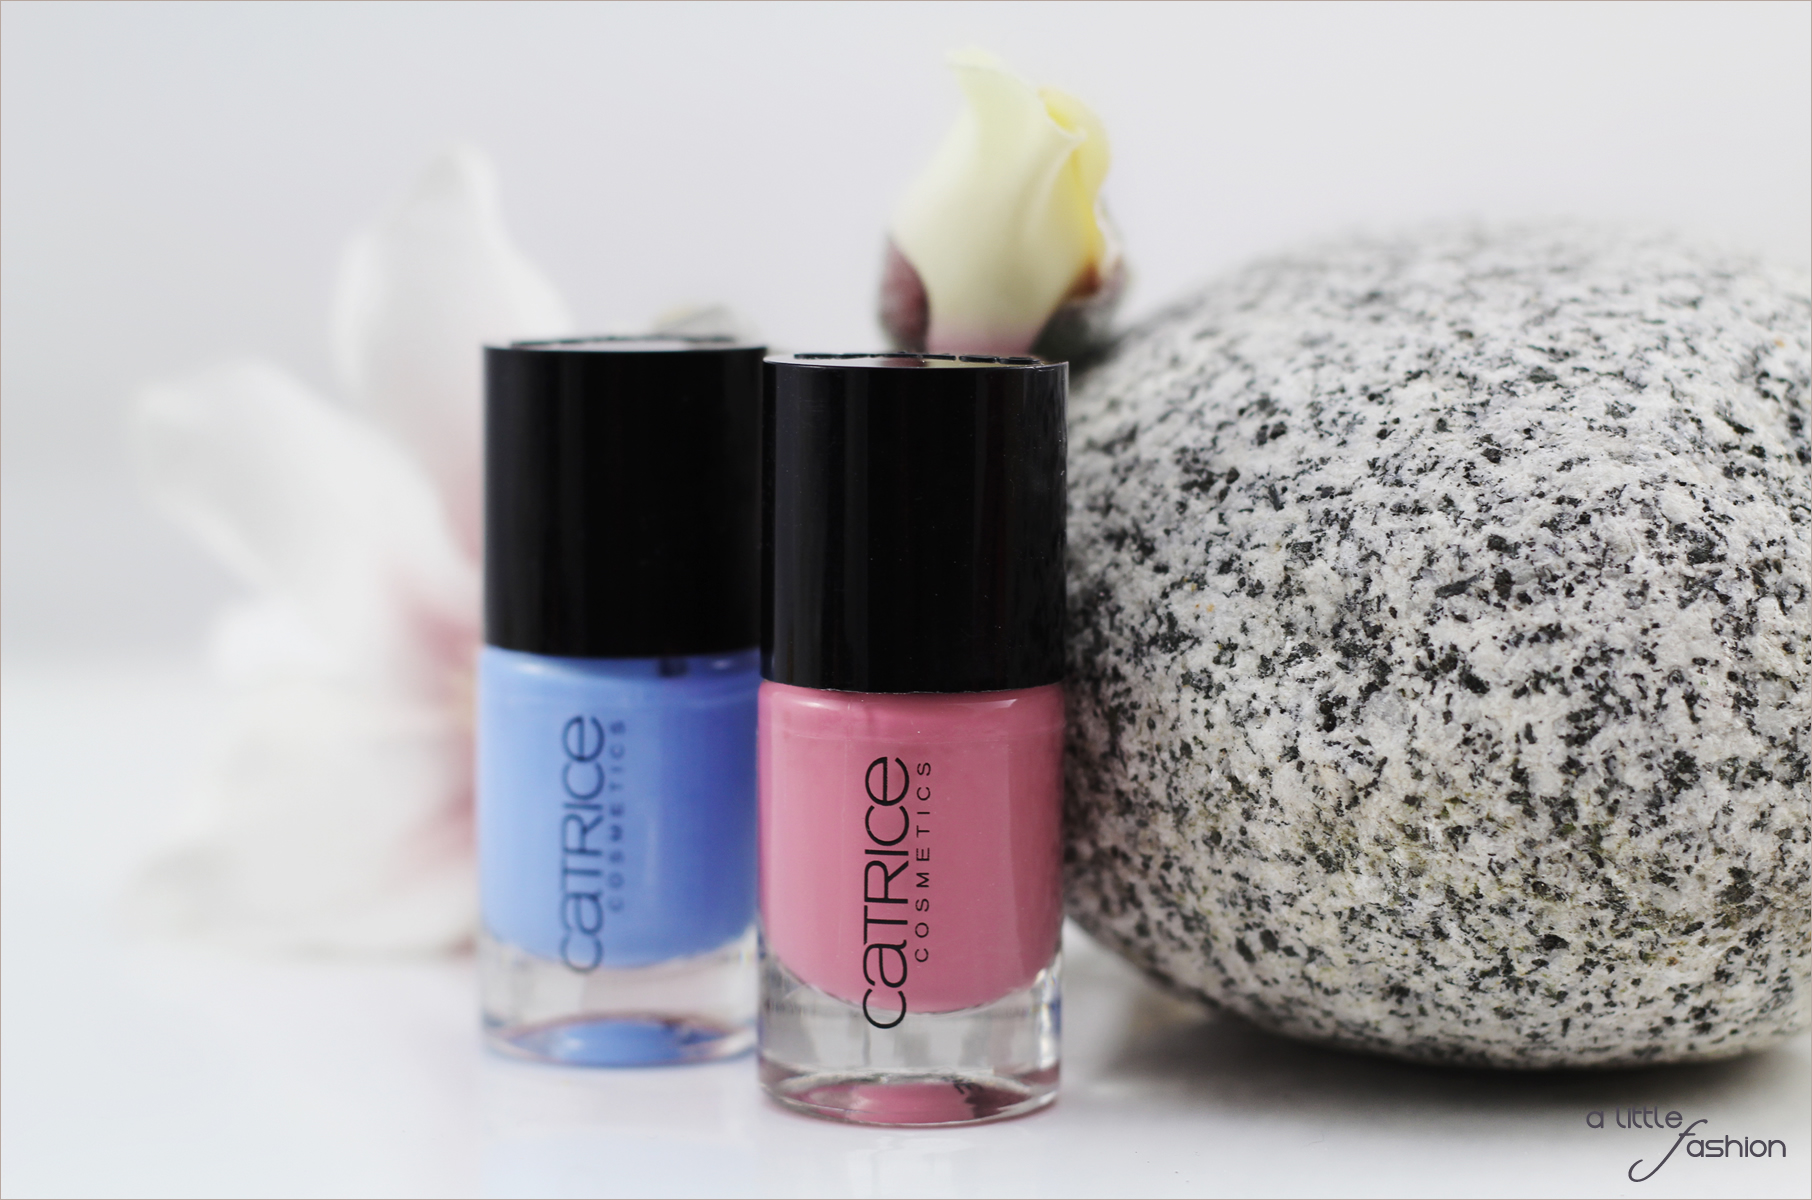 Frühlinghaftes Nageldesign mit Rose Quartz und Serenity  |  A Little Fashion  |  https://www.filizity.com/beauty/nageldesign-rose-quartz-serenity